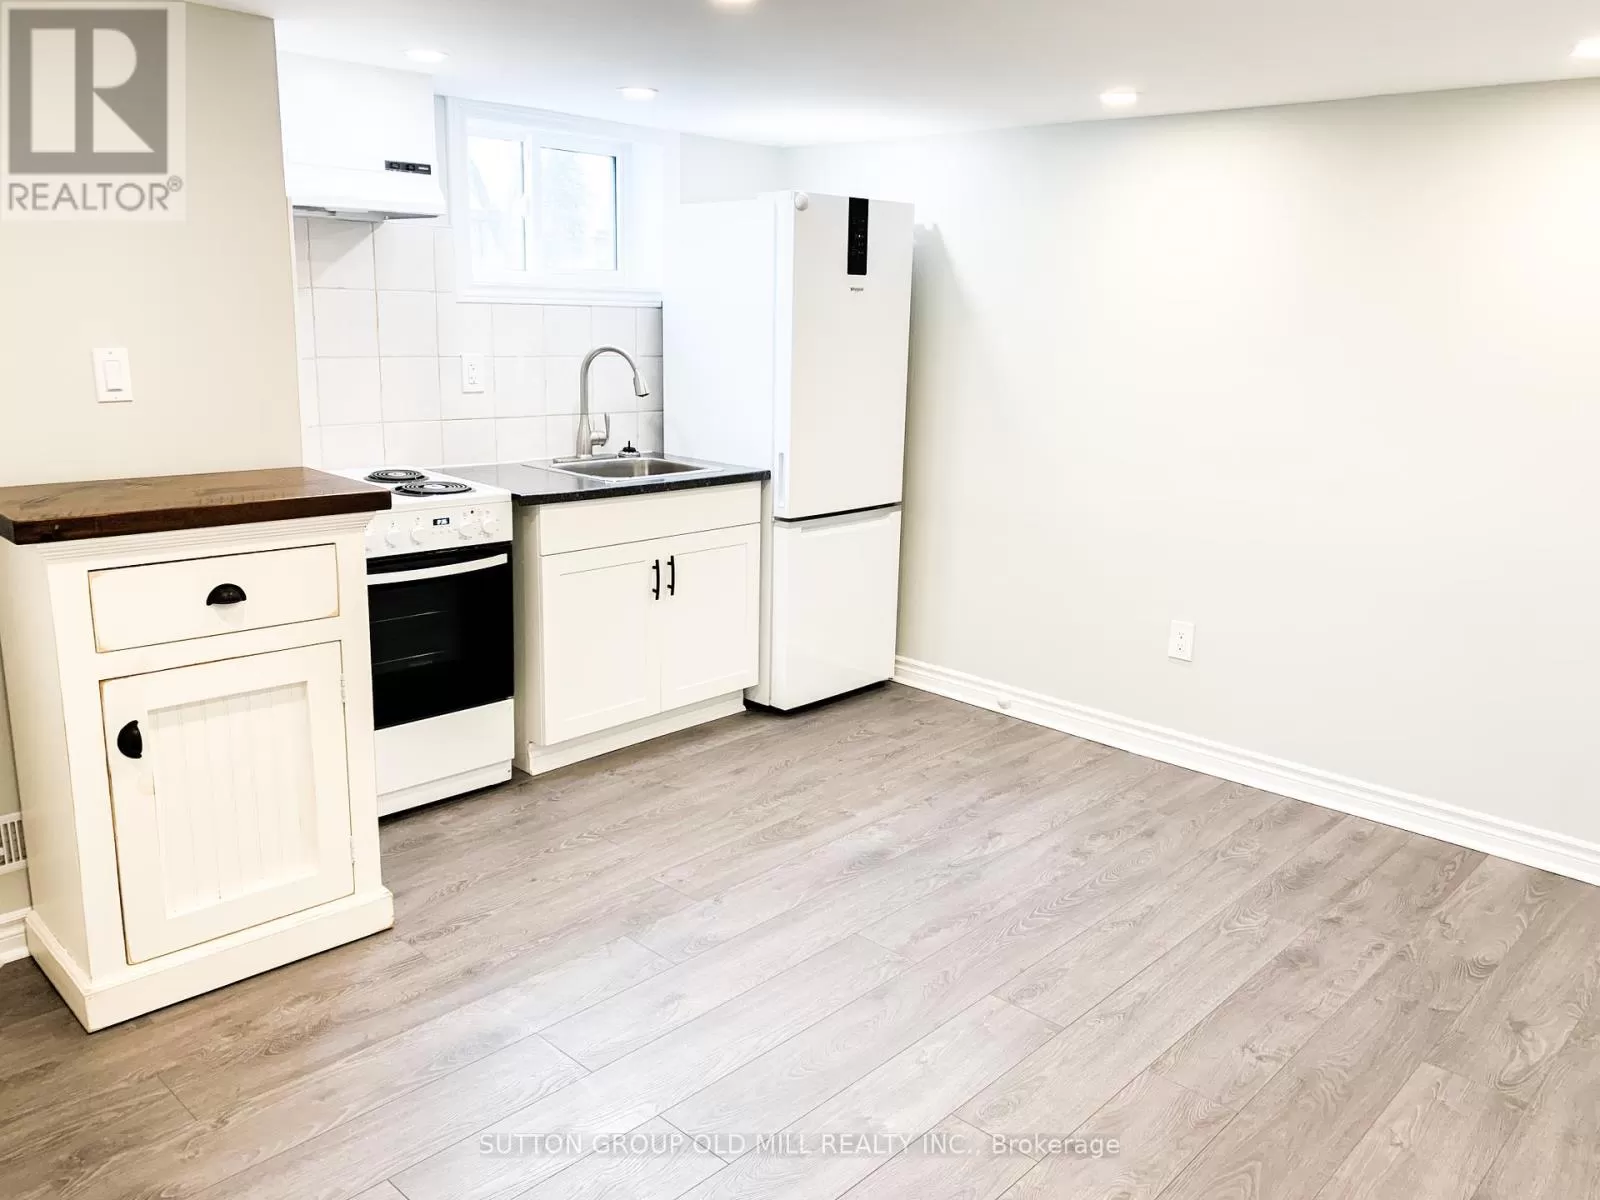 Duplex for rent: 2 - 36 Dayton Avenue, Toronto, Ontario M8Z 3L7